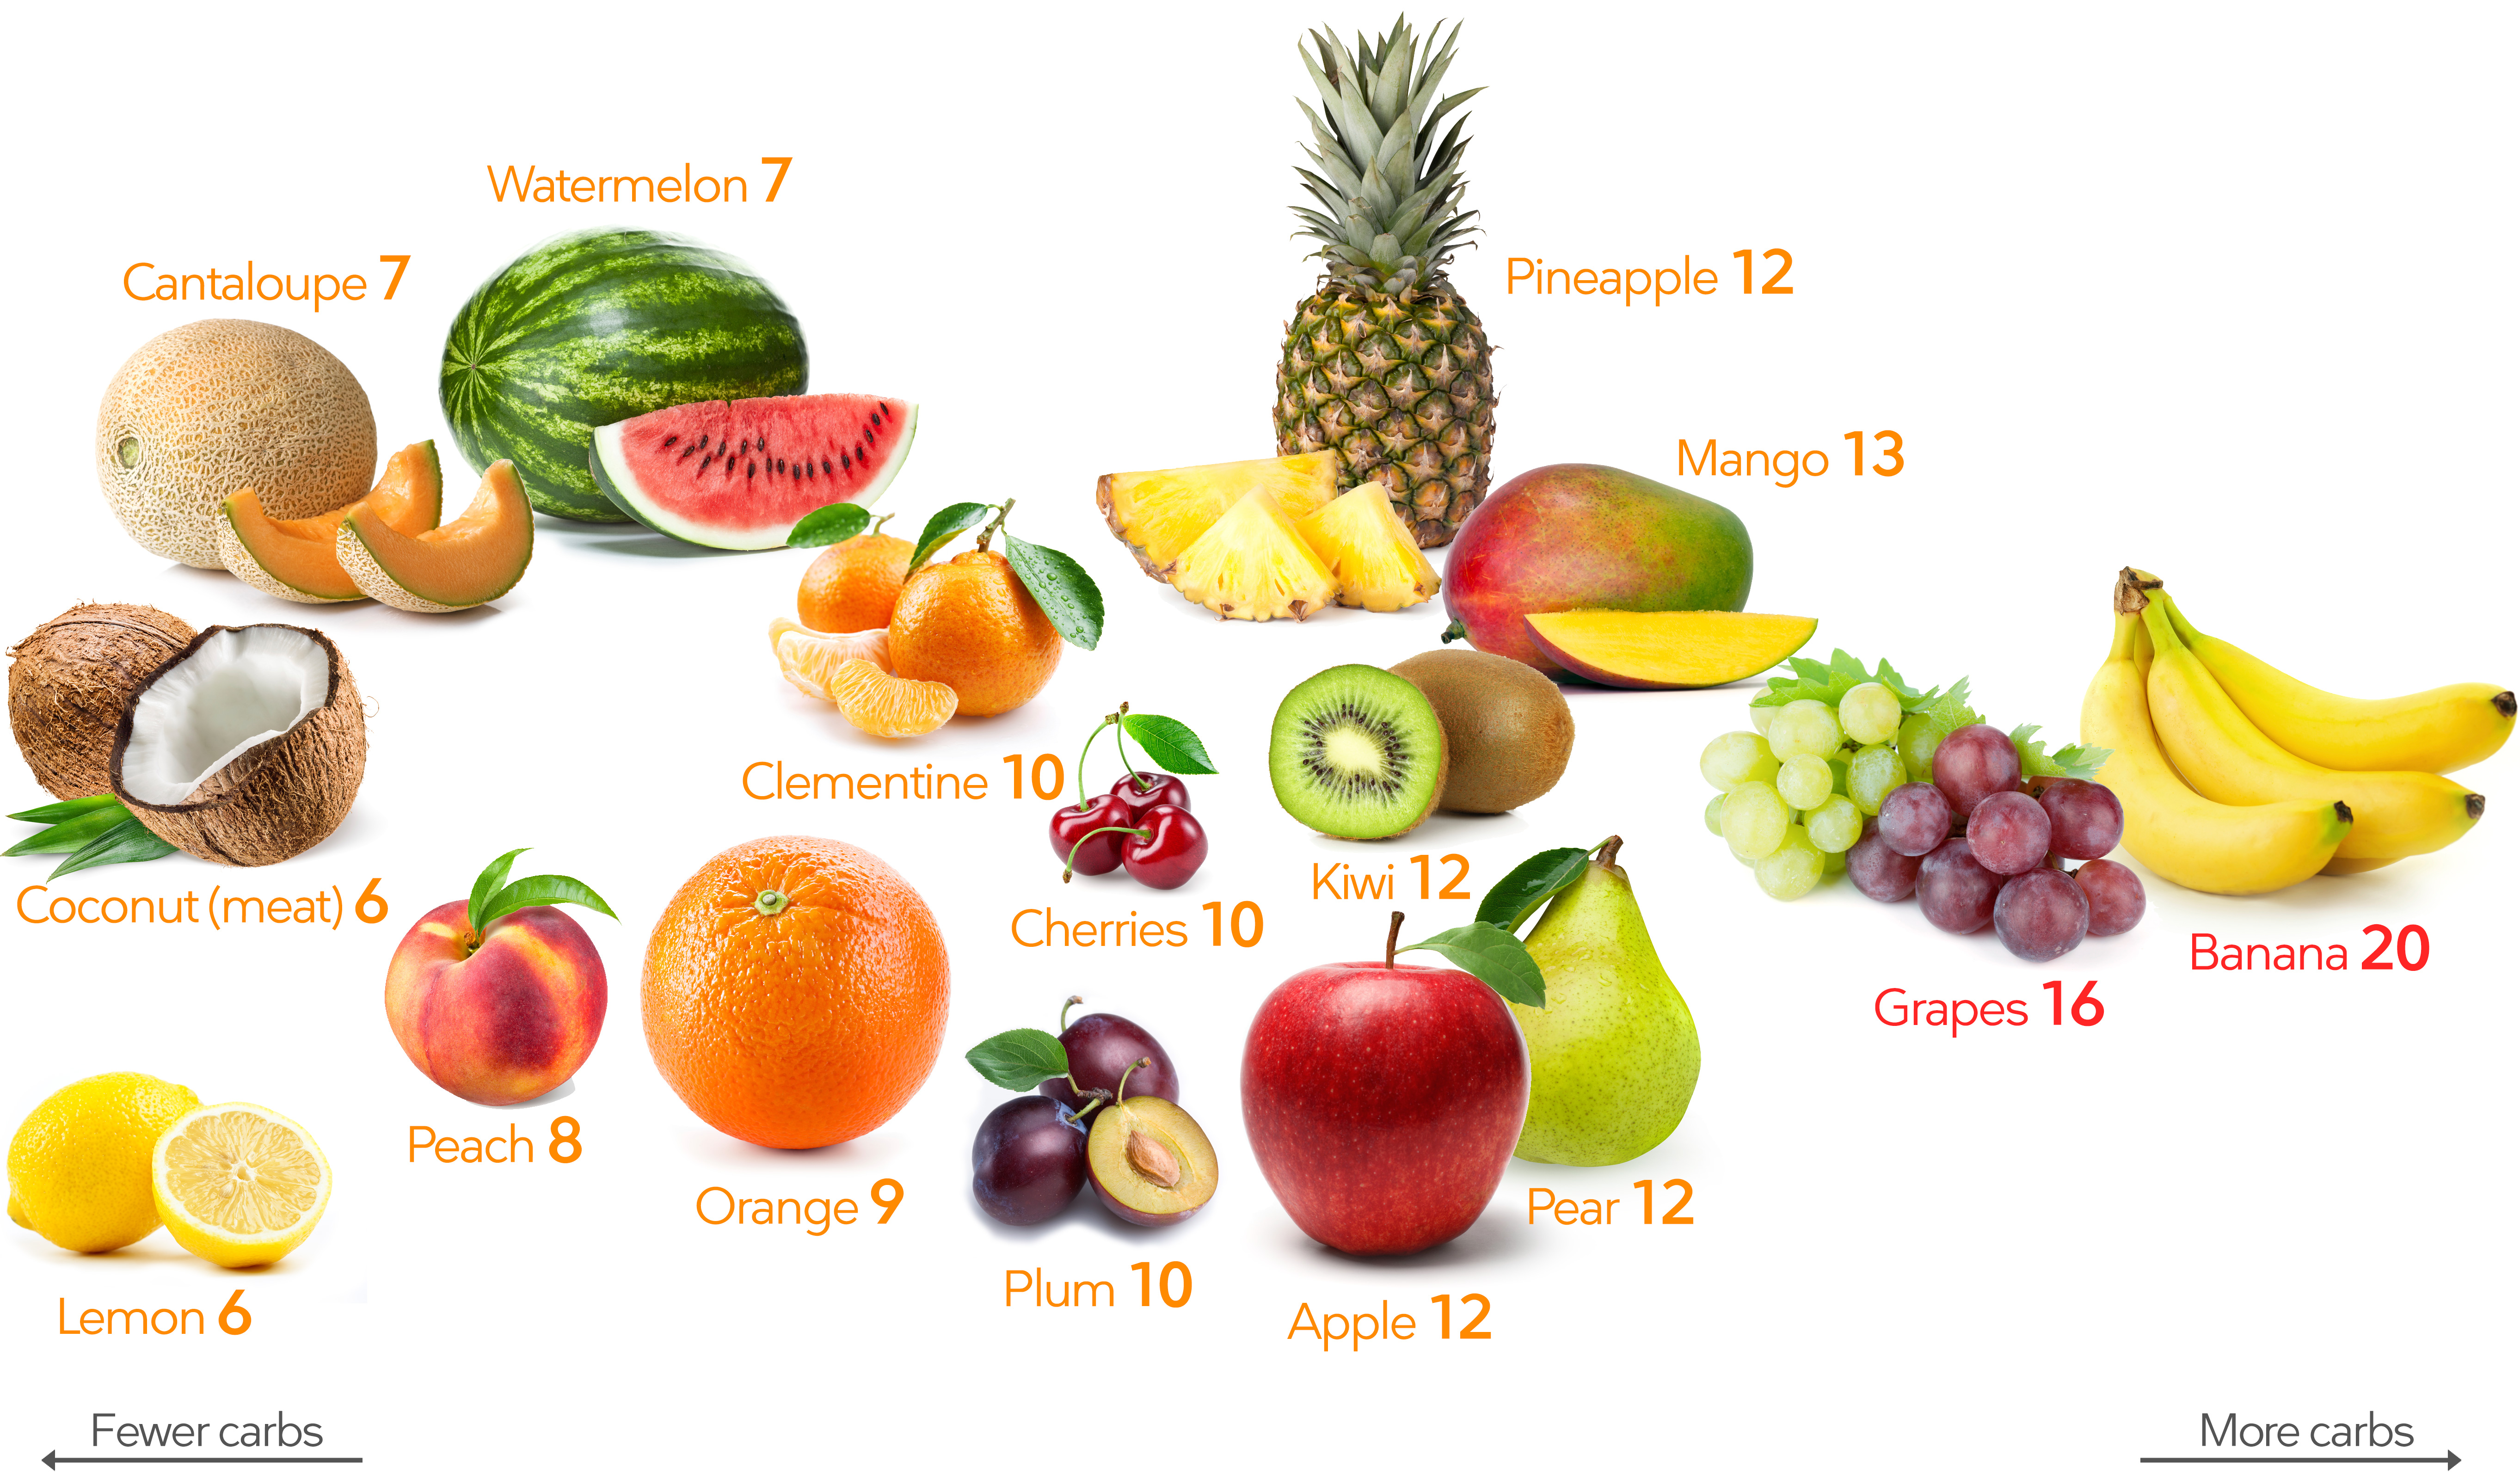 They some fruit. Фрукты и ягоды на кето диете. Разрешённые фрукты и ягоды на кето. Разрешенные фрукты на кето диете. Разрешенные фрукты на кето.